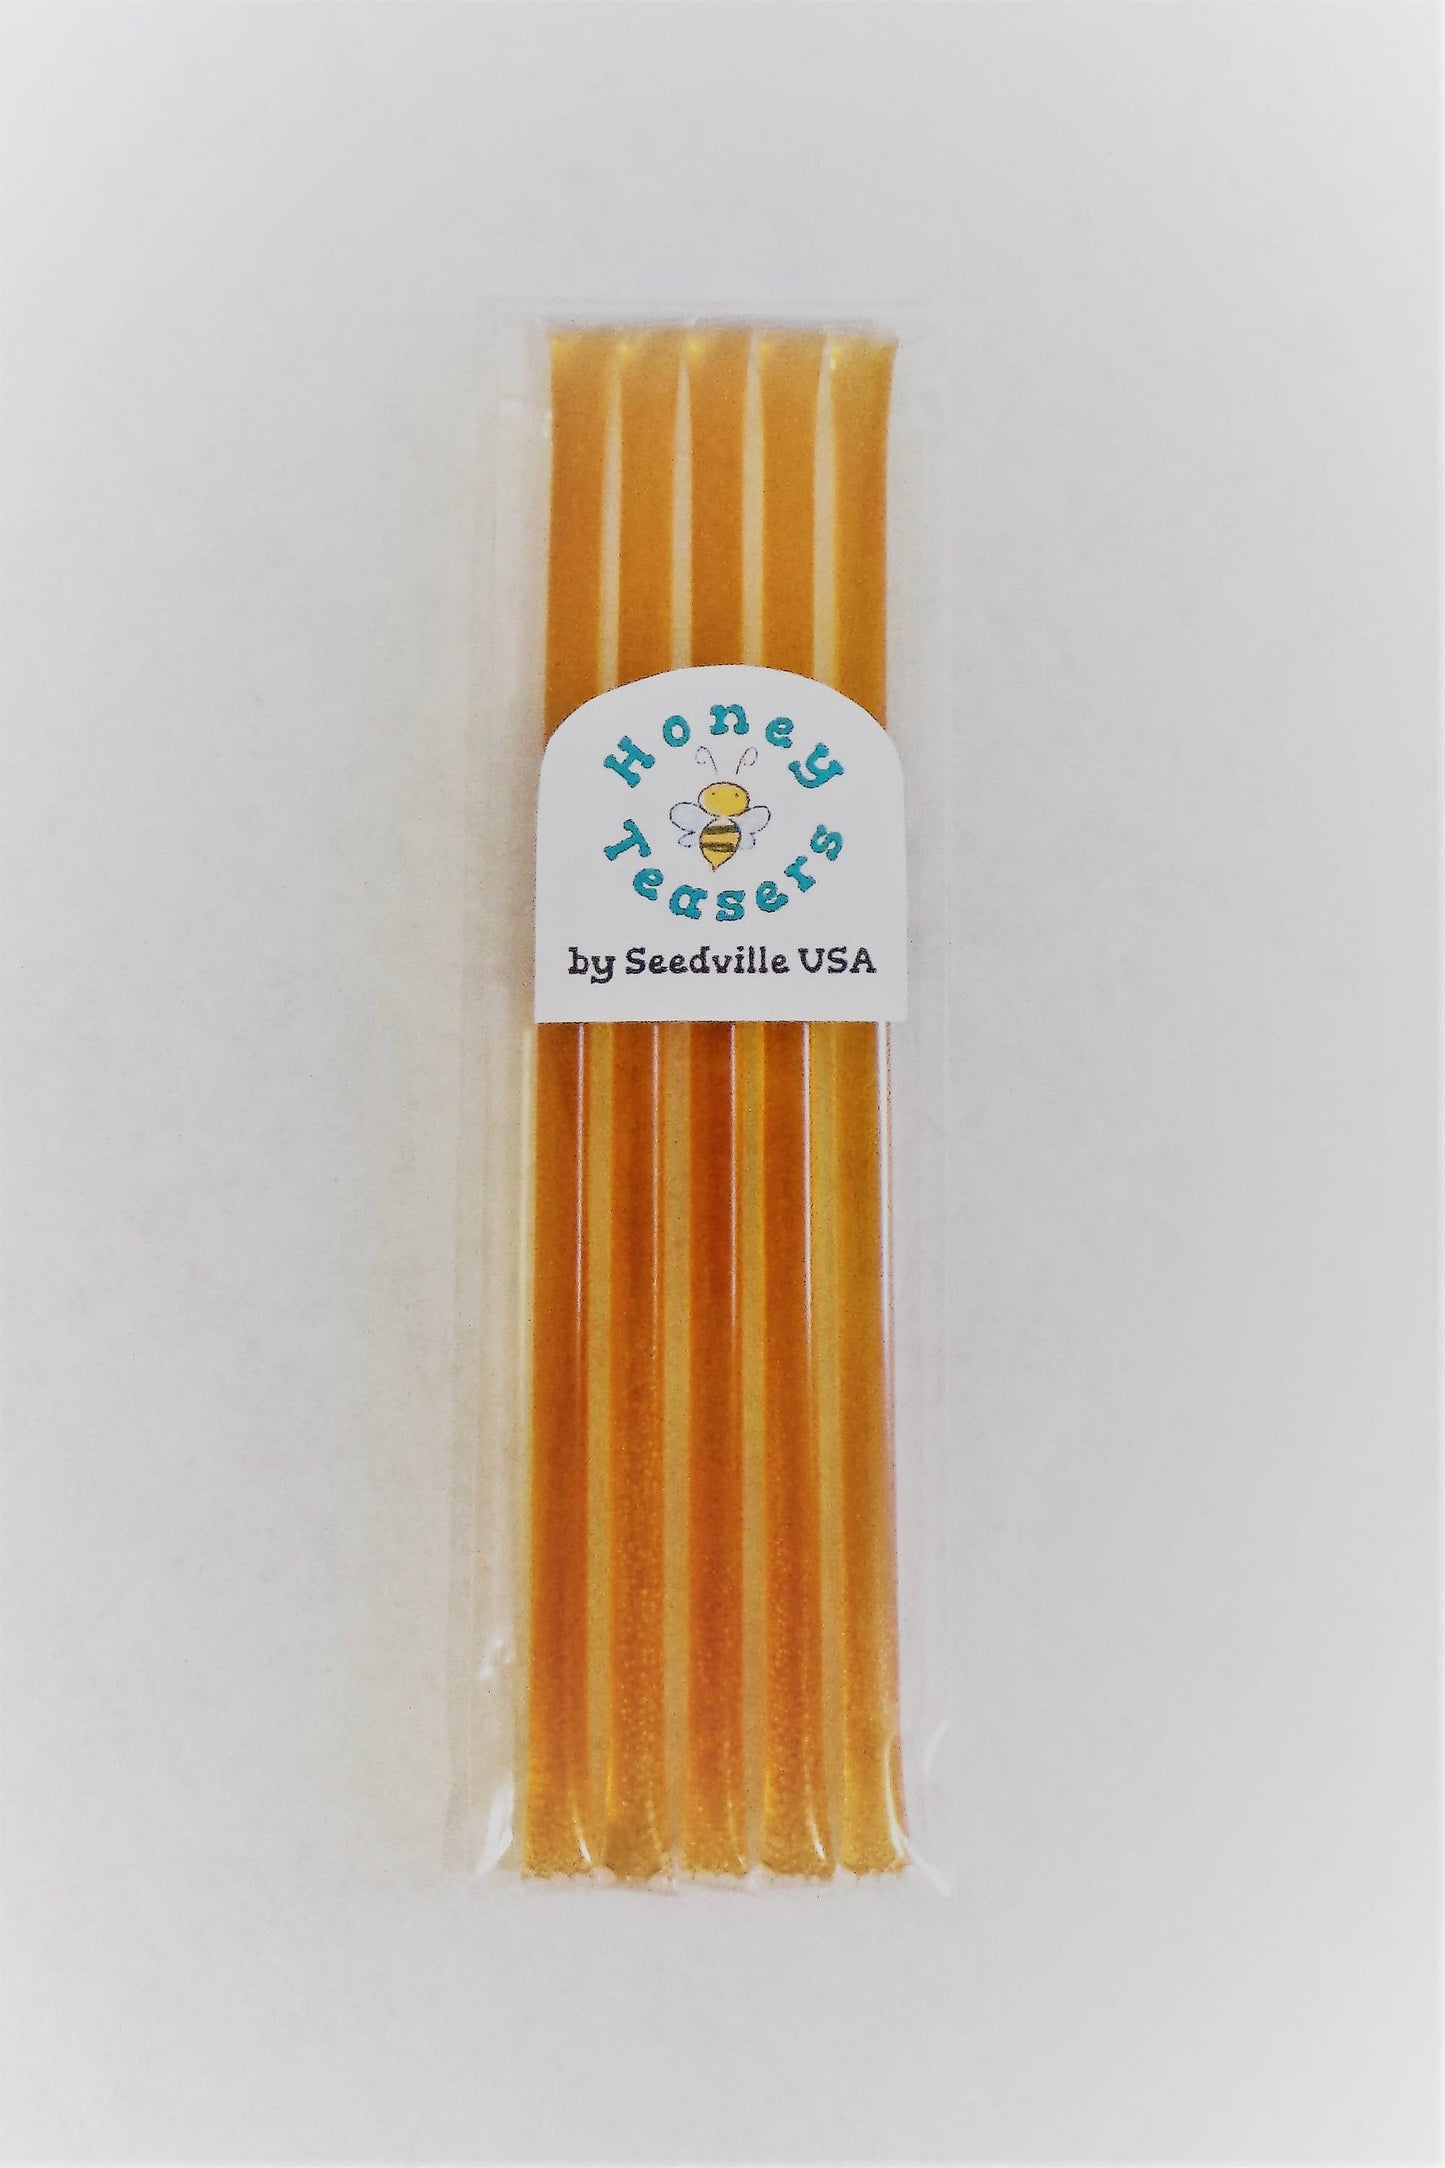 5 Pack LEMON HONEY TEASERS Natural Honey Snack Sticks Honeystix Straws